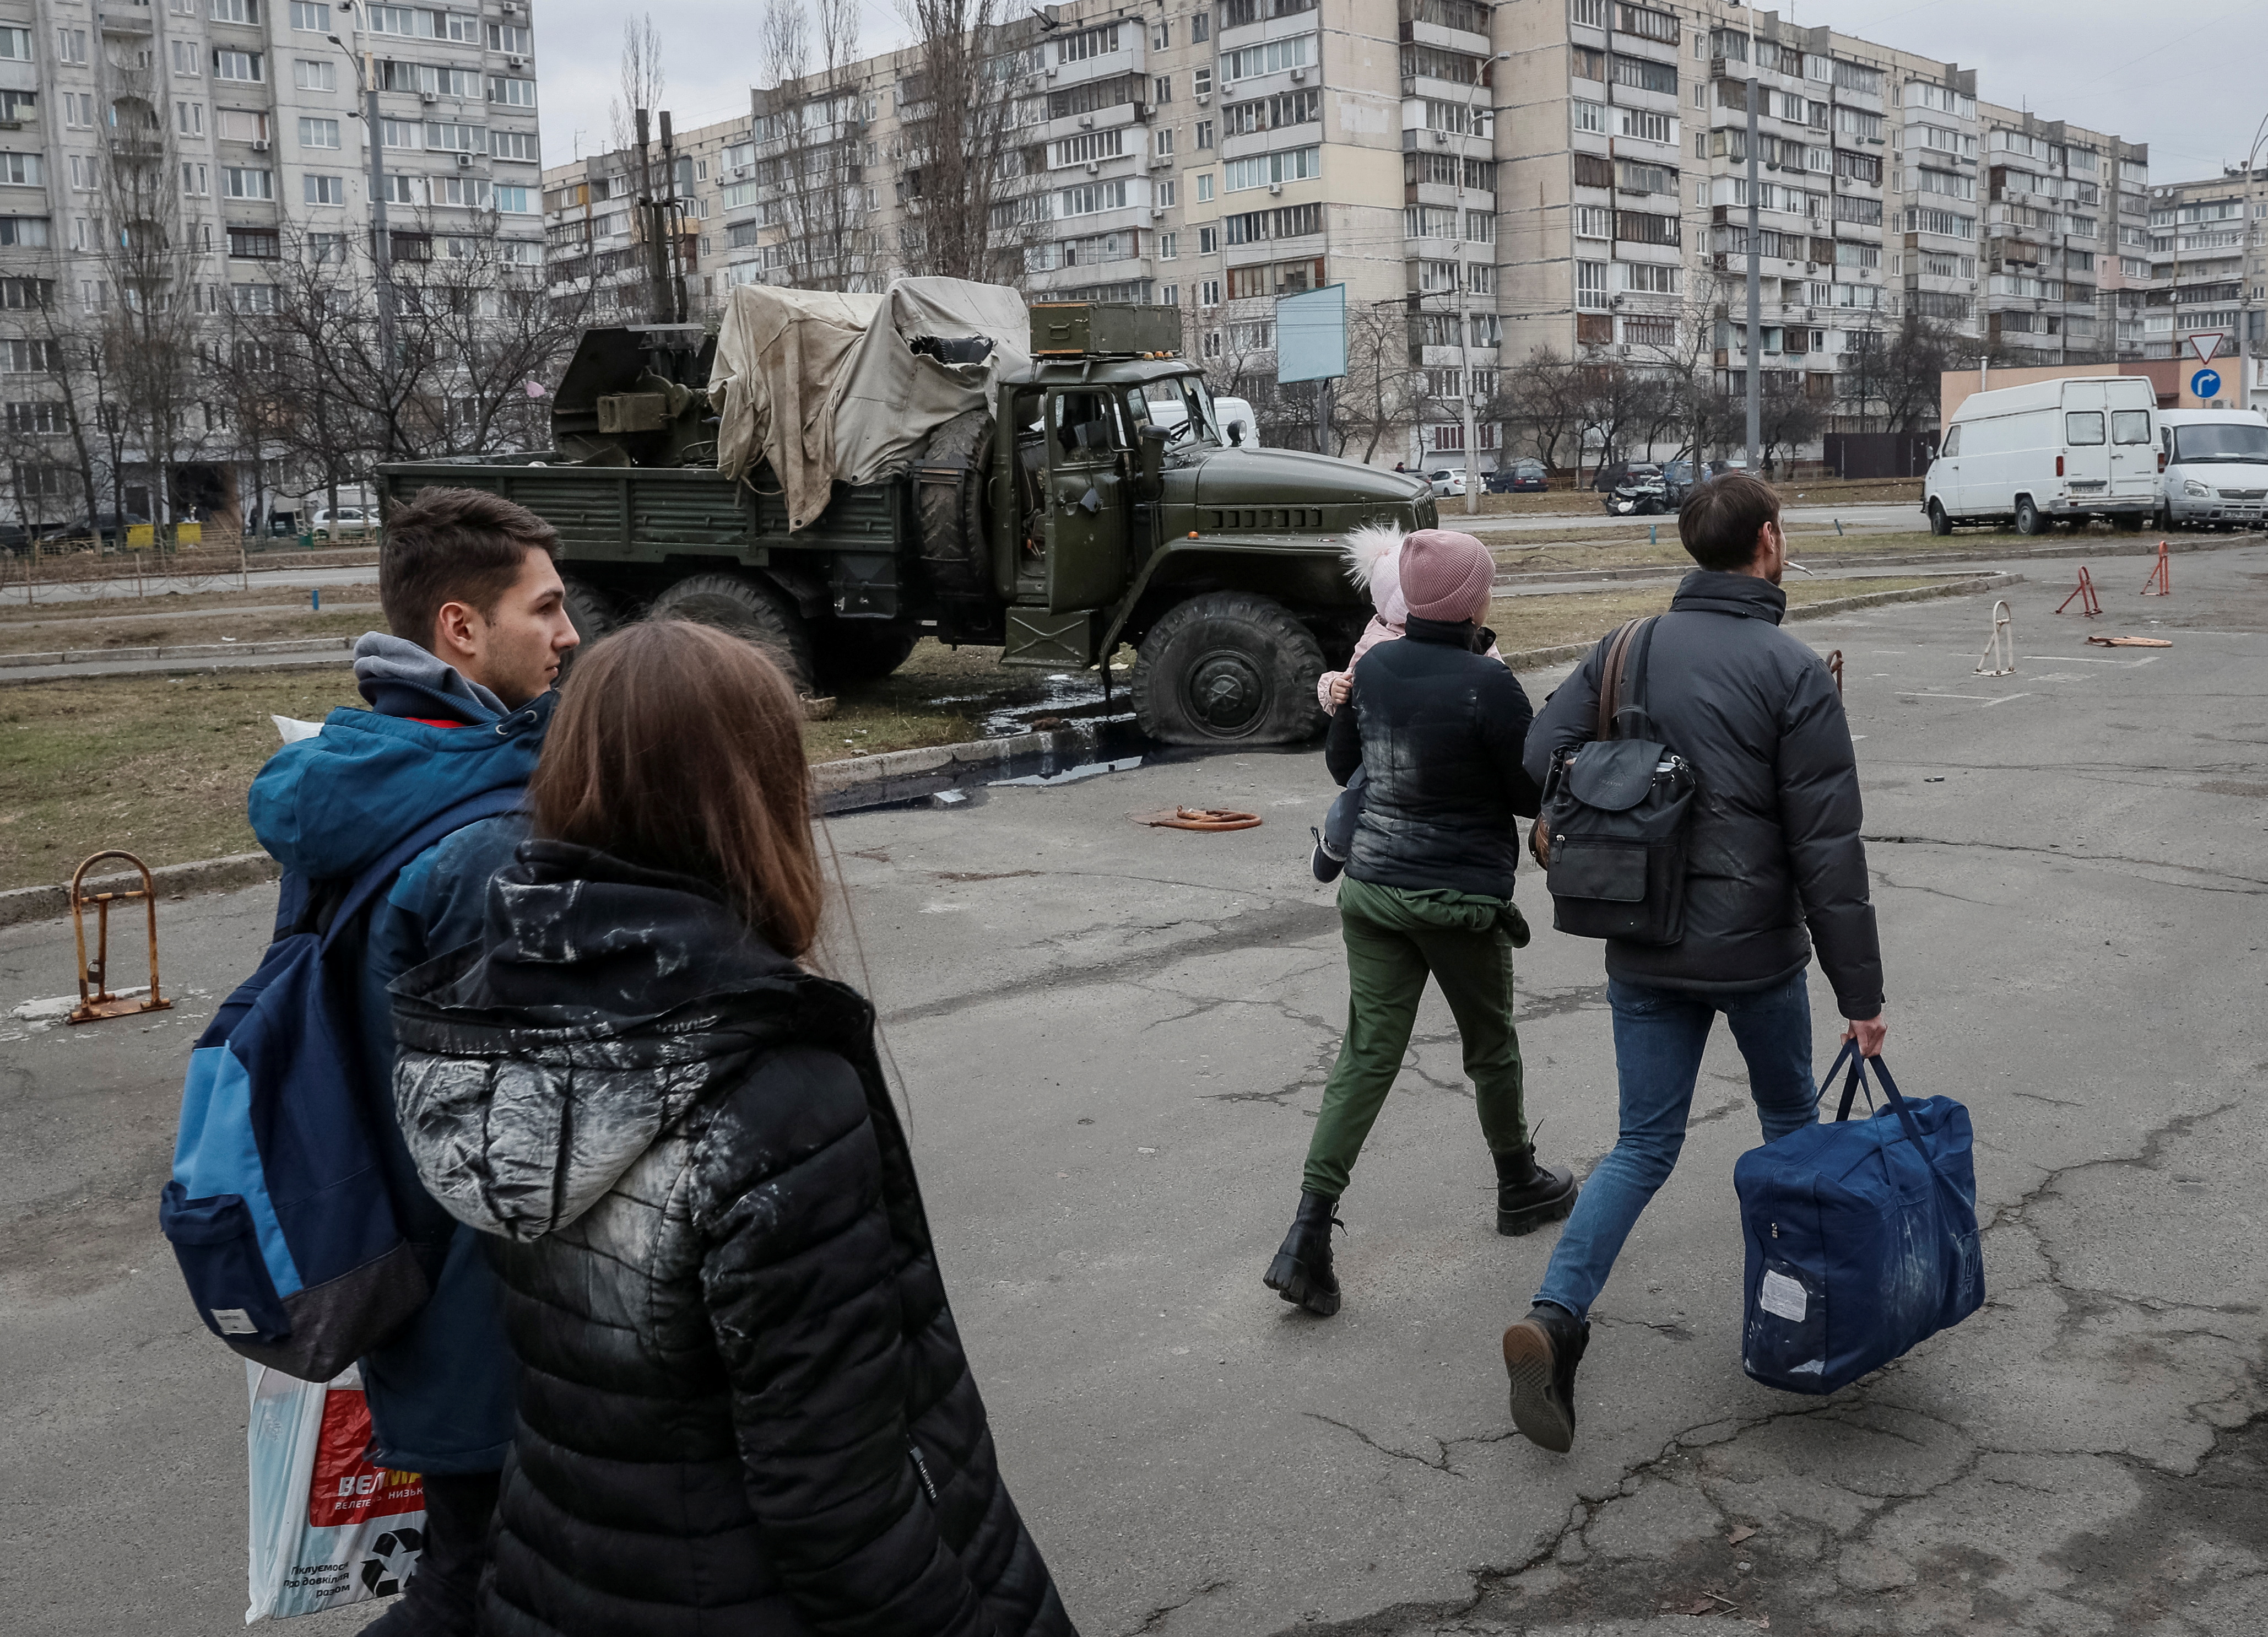 La gente abandona Kiev después de que Rusia lanzara una operación militar masiva contra Ucrania, en Kiev, Ucrania, el 25 de febrero de 2022. (REUTERS/Gleb Garanich)